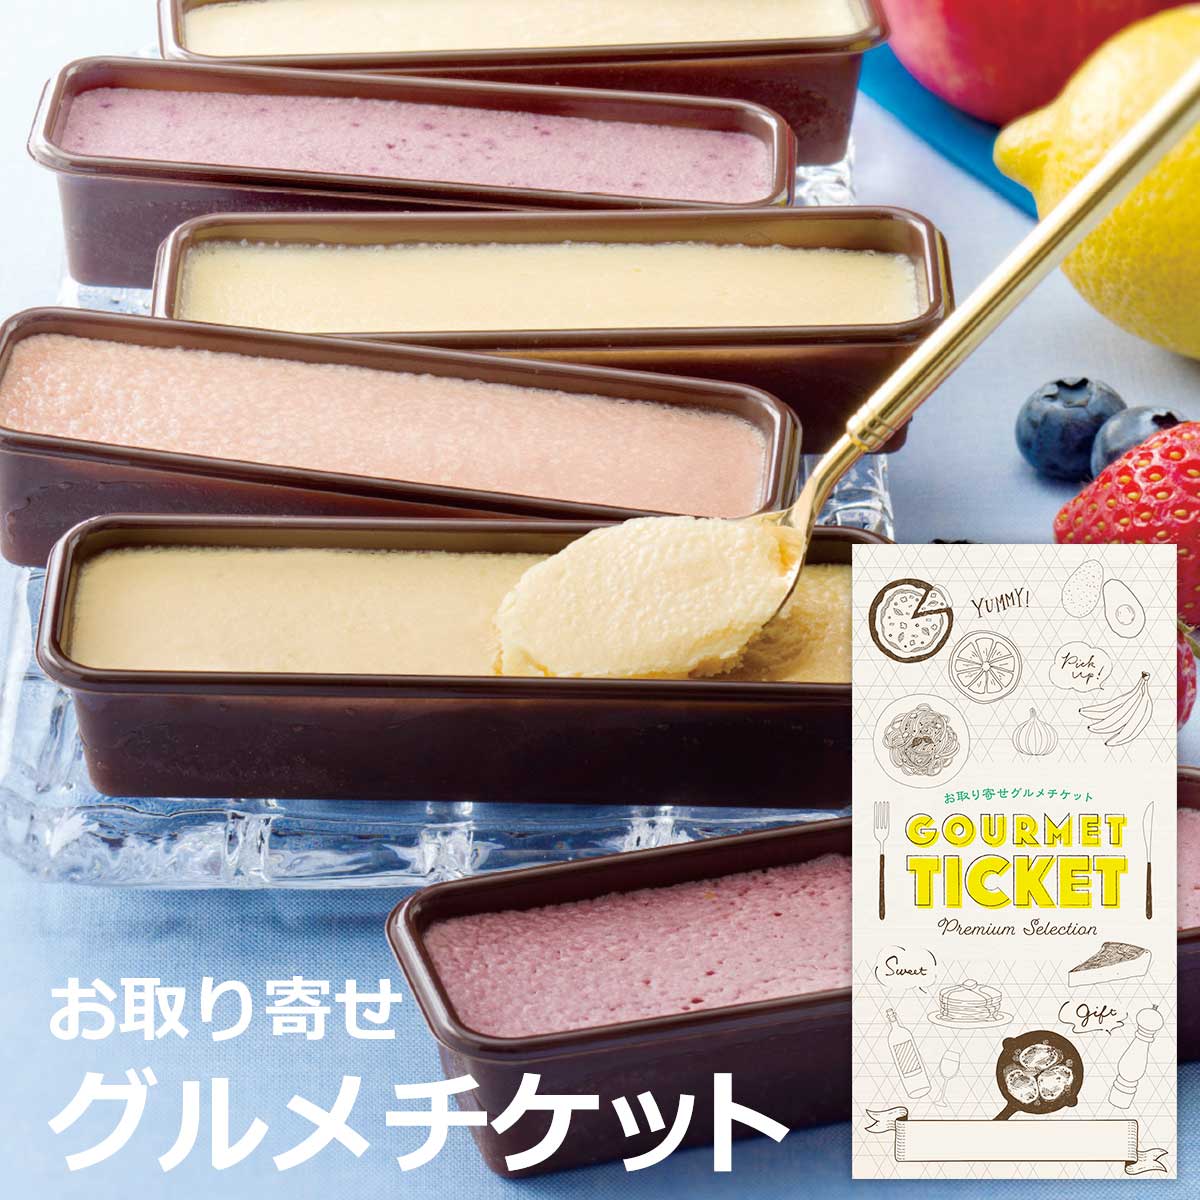 お取り寄せグルメチケット カスターニャ 広島県産フルーツチーズケーキ6種セット 